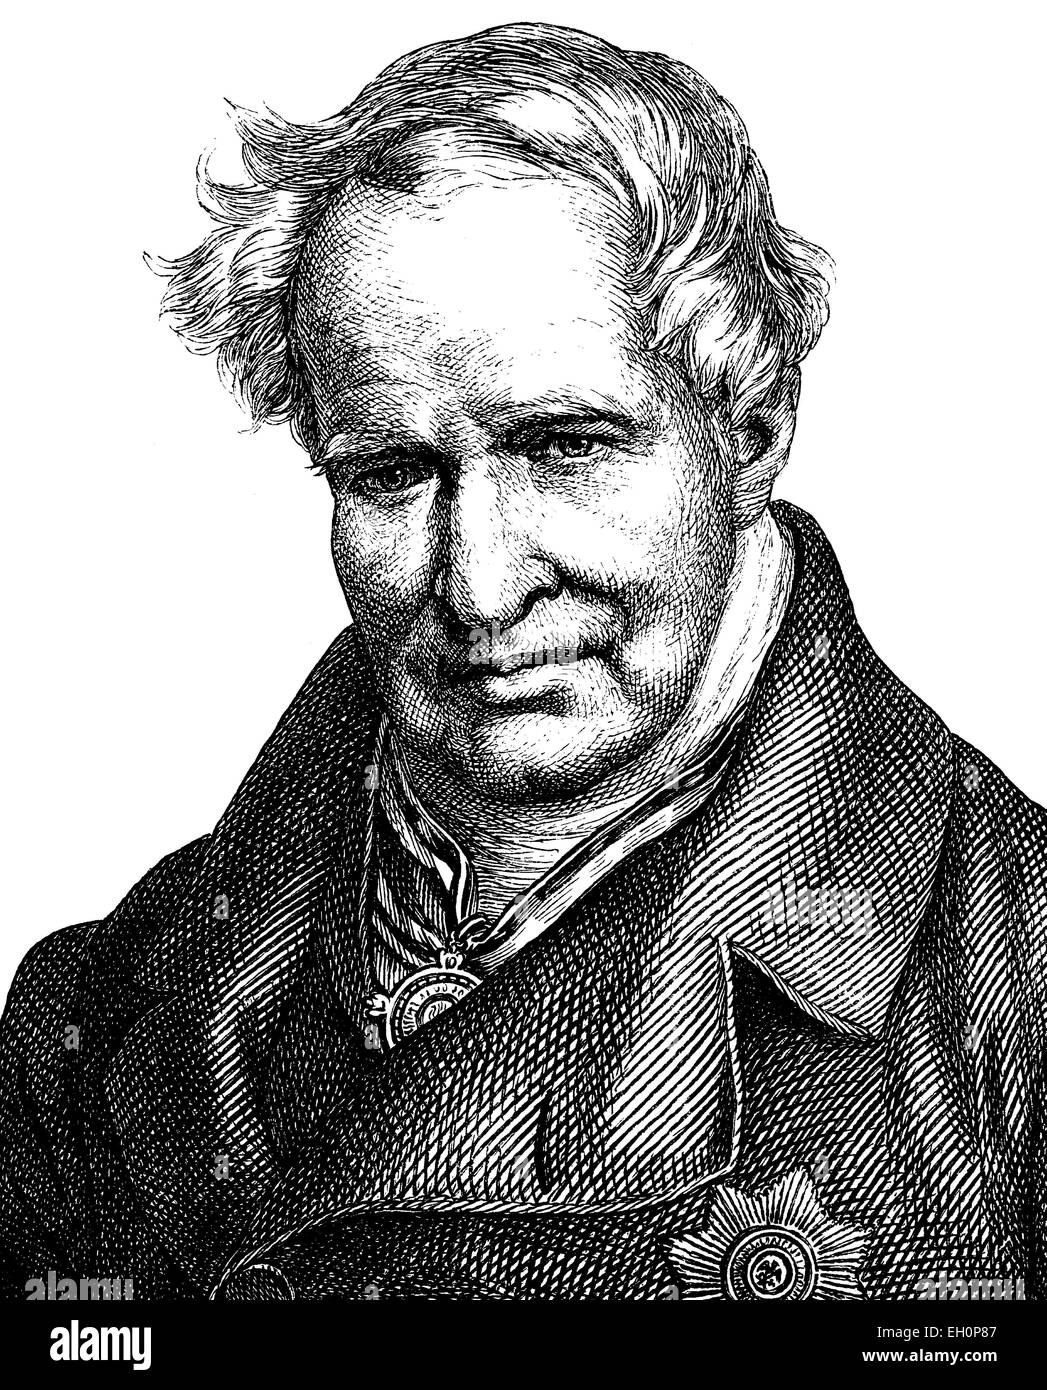 Portrait de Friedrich Wilhelm Heinrich Alexander von Humboldt, 14 septembre 1769 - 6 mai 1859, était un géographe prussien, naturaliste, explorateur et influent promoteur de la science et la philosophie romantique, l'Allemagne, l'amélioration numérique reproduction d'une gravure sur bois à partir de la publication de l'année 1888 Banque D'Images